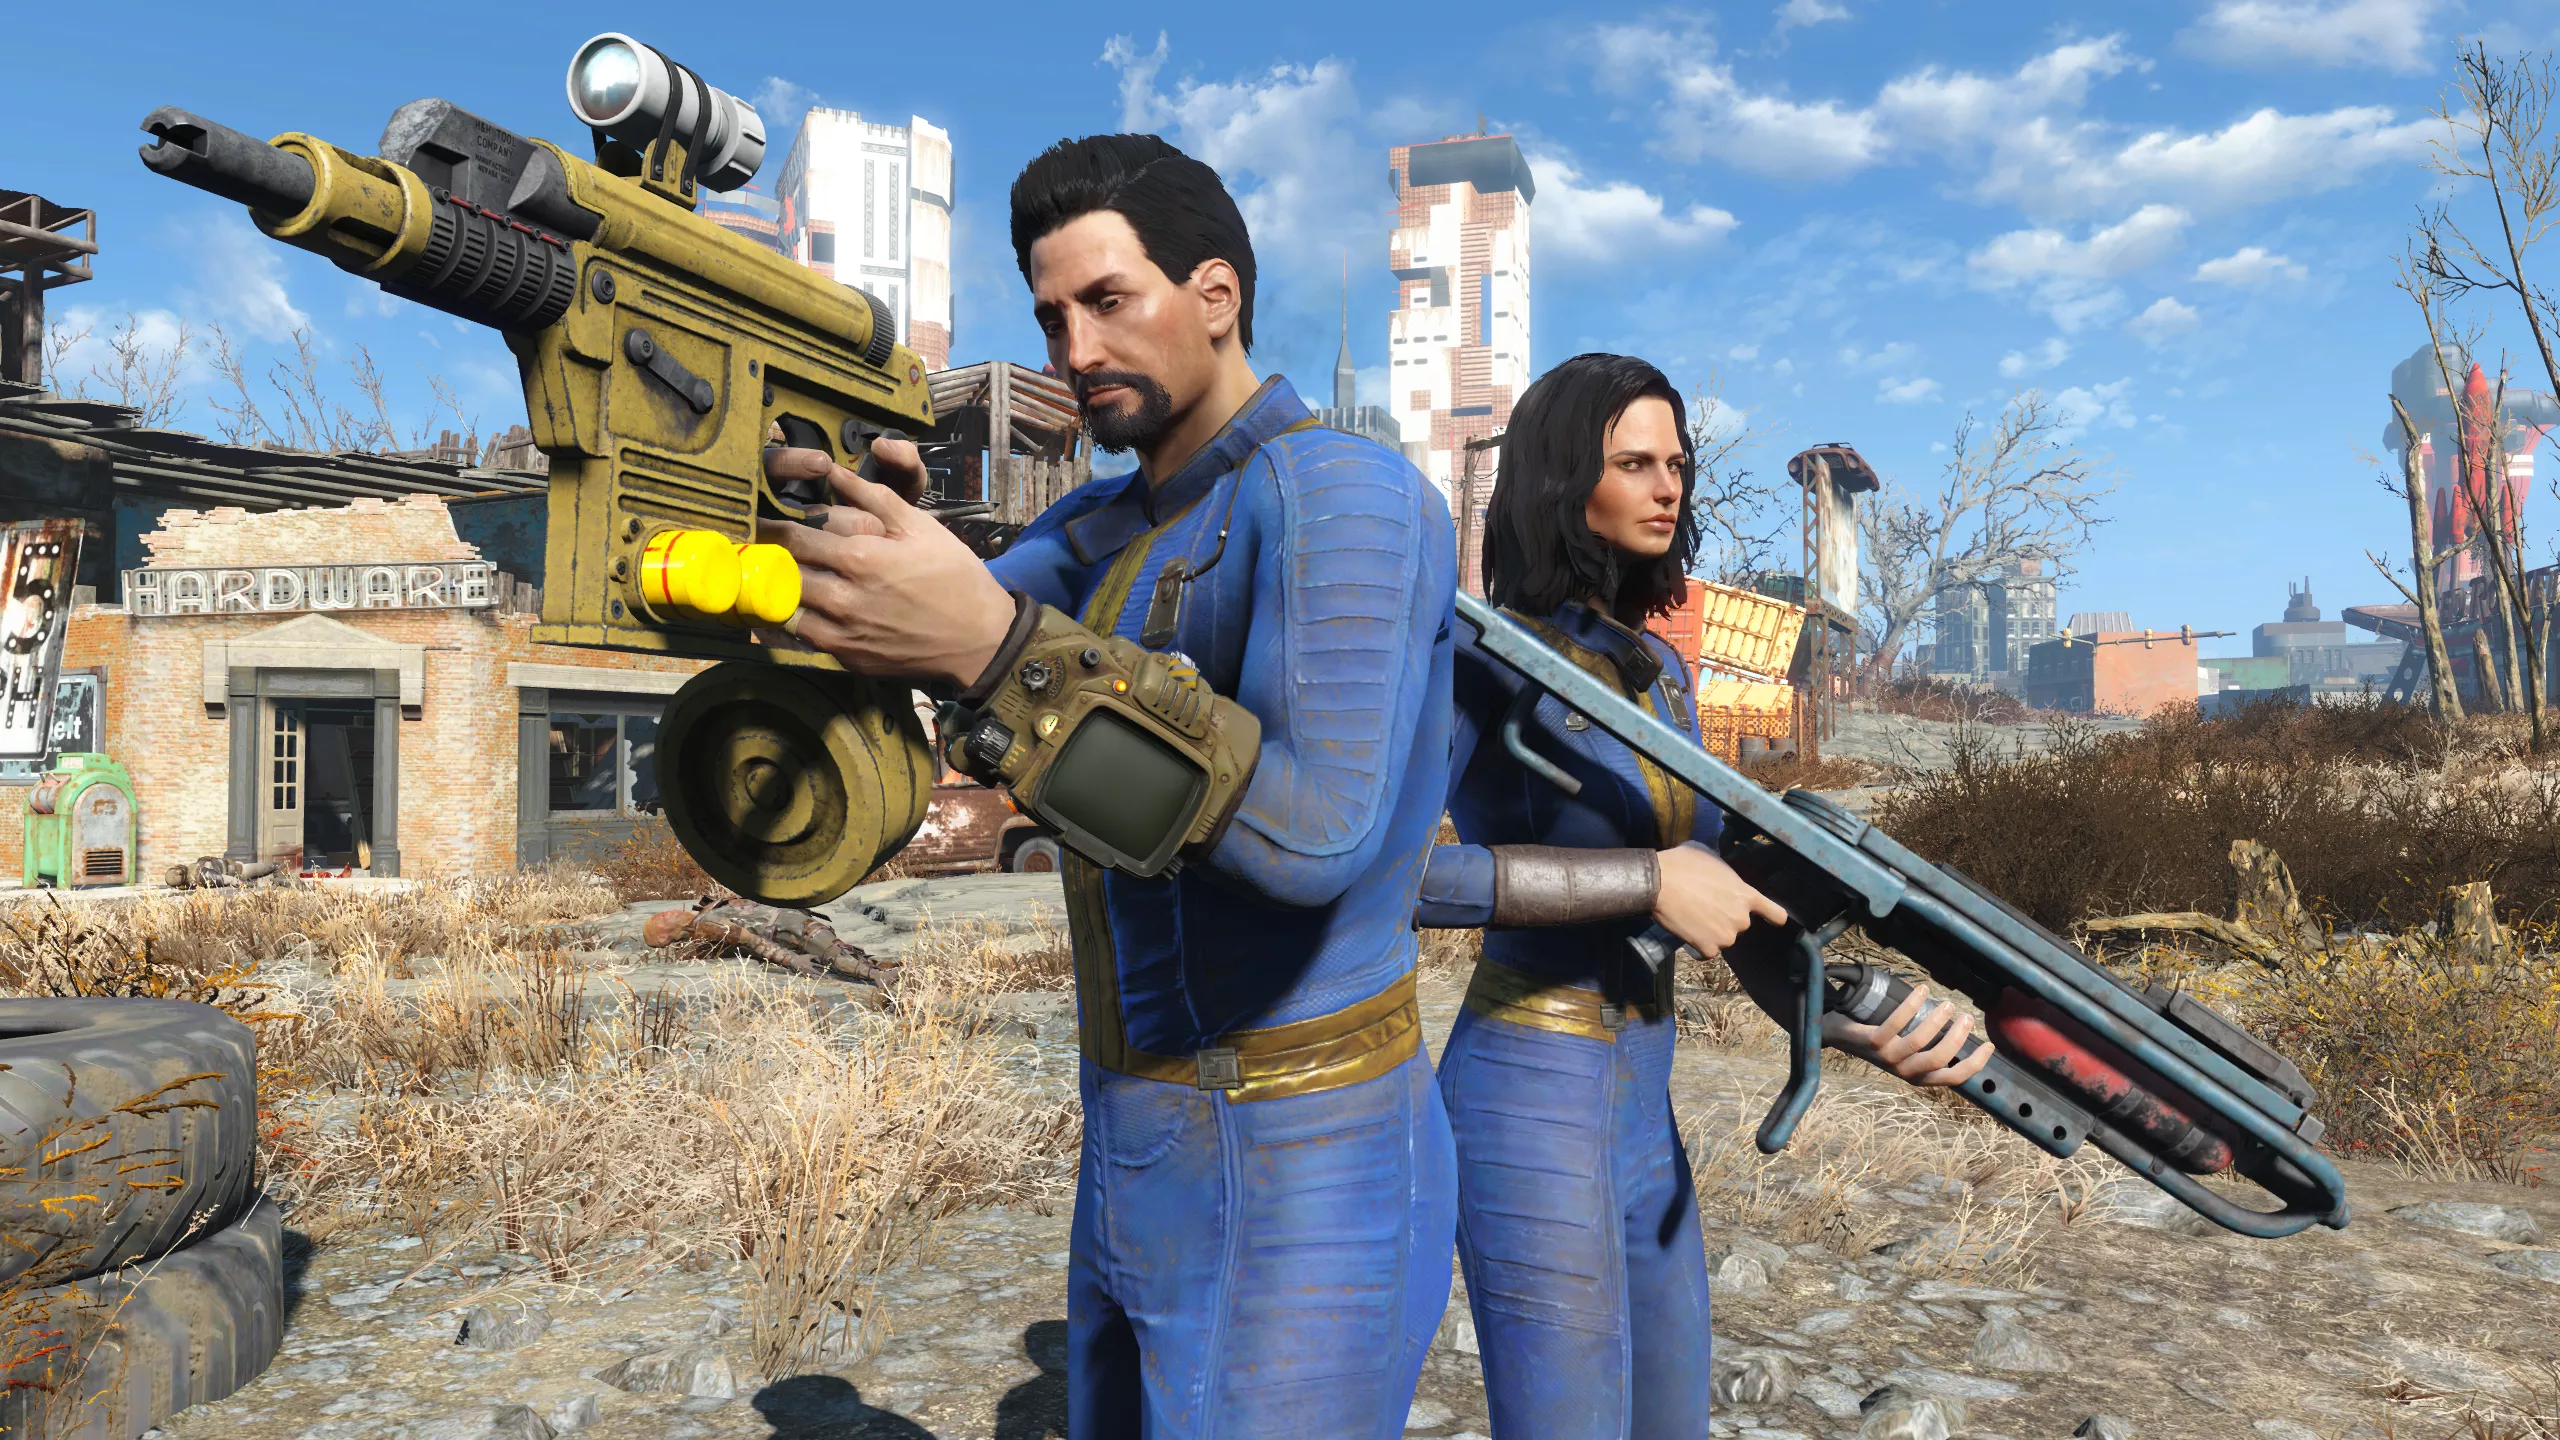 La temporada 1 de la serie de televisión Fallout ya se está transmitiendo, la actualización de próxima generación de Fallout 4 presenta contenido nuevo el 25 de abril